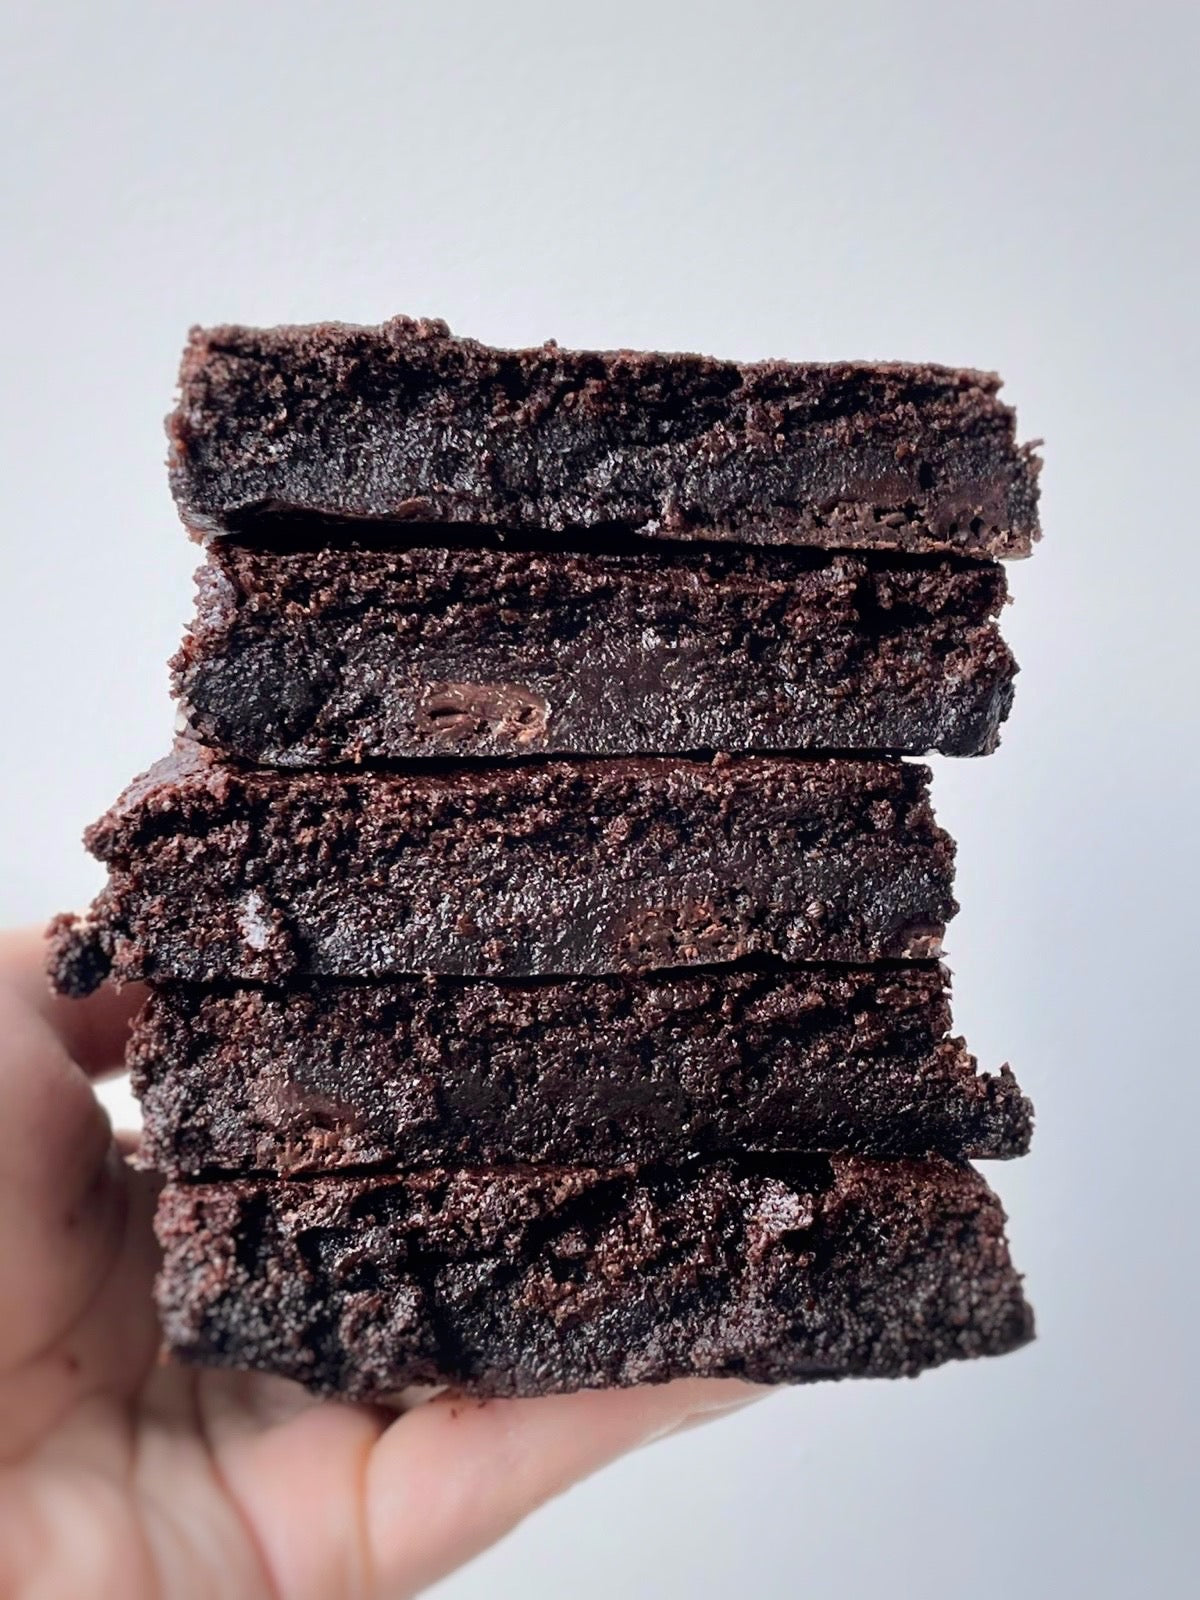 patisserie sans gluten vegan montreal brownies chocolat noir 